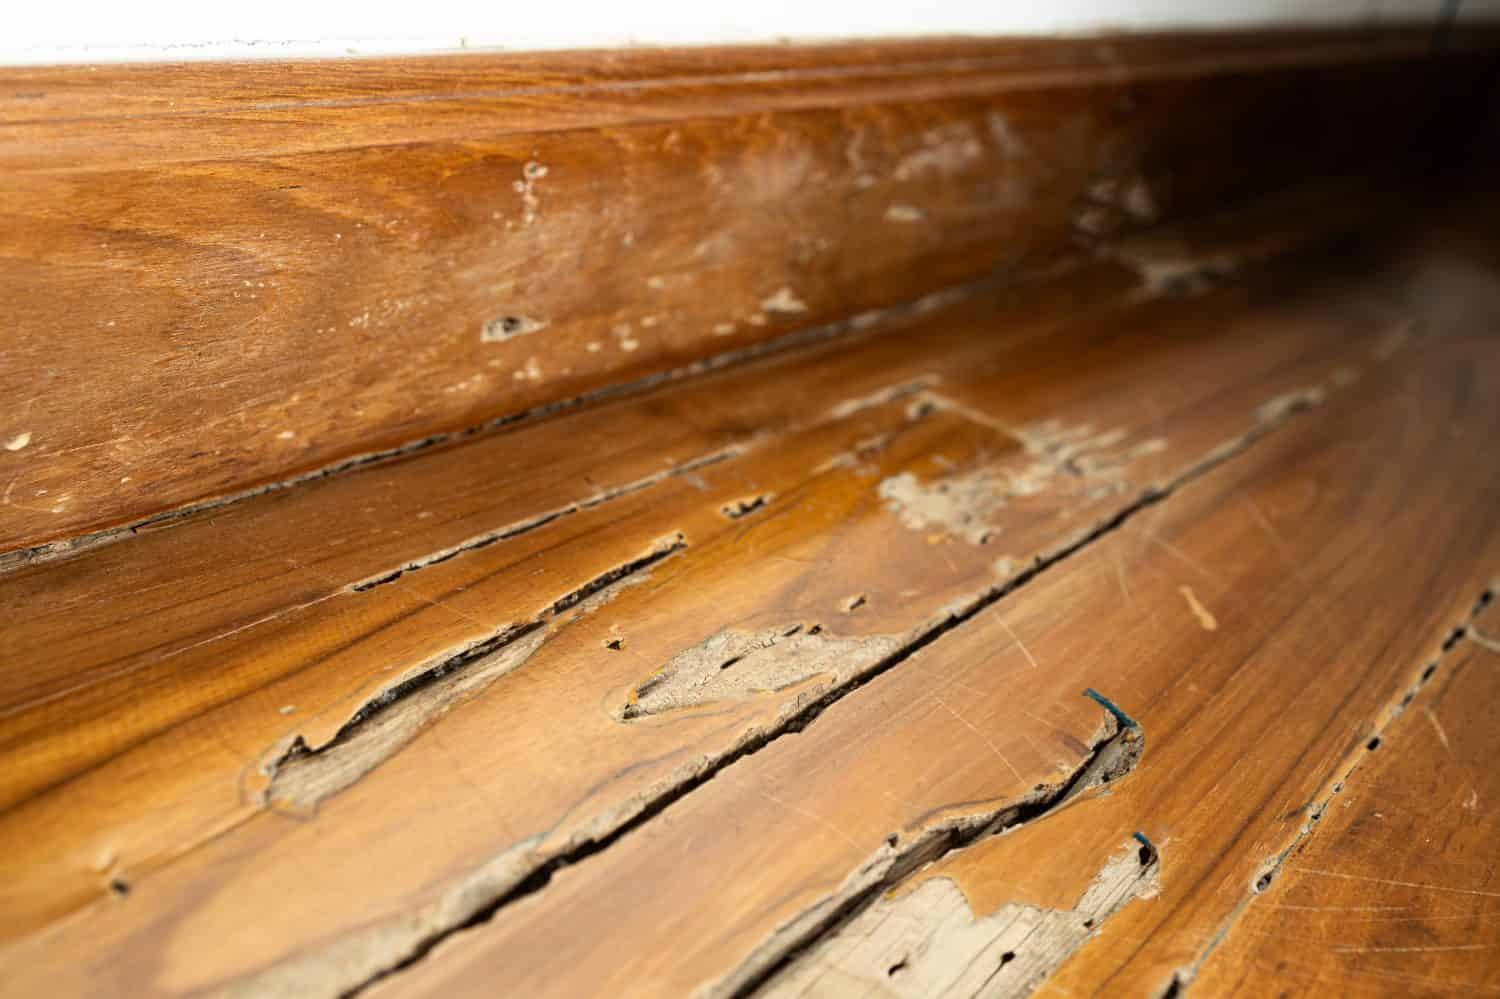 Danni al pavimento in legno all'interno di edifici o strutture in legno nella casa, decomposizione del legno dopo che le termiti del legno secco infestano e si nutrono di legno, problema di infestazione di termiti in casa